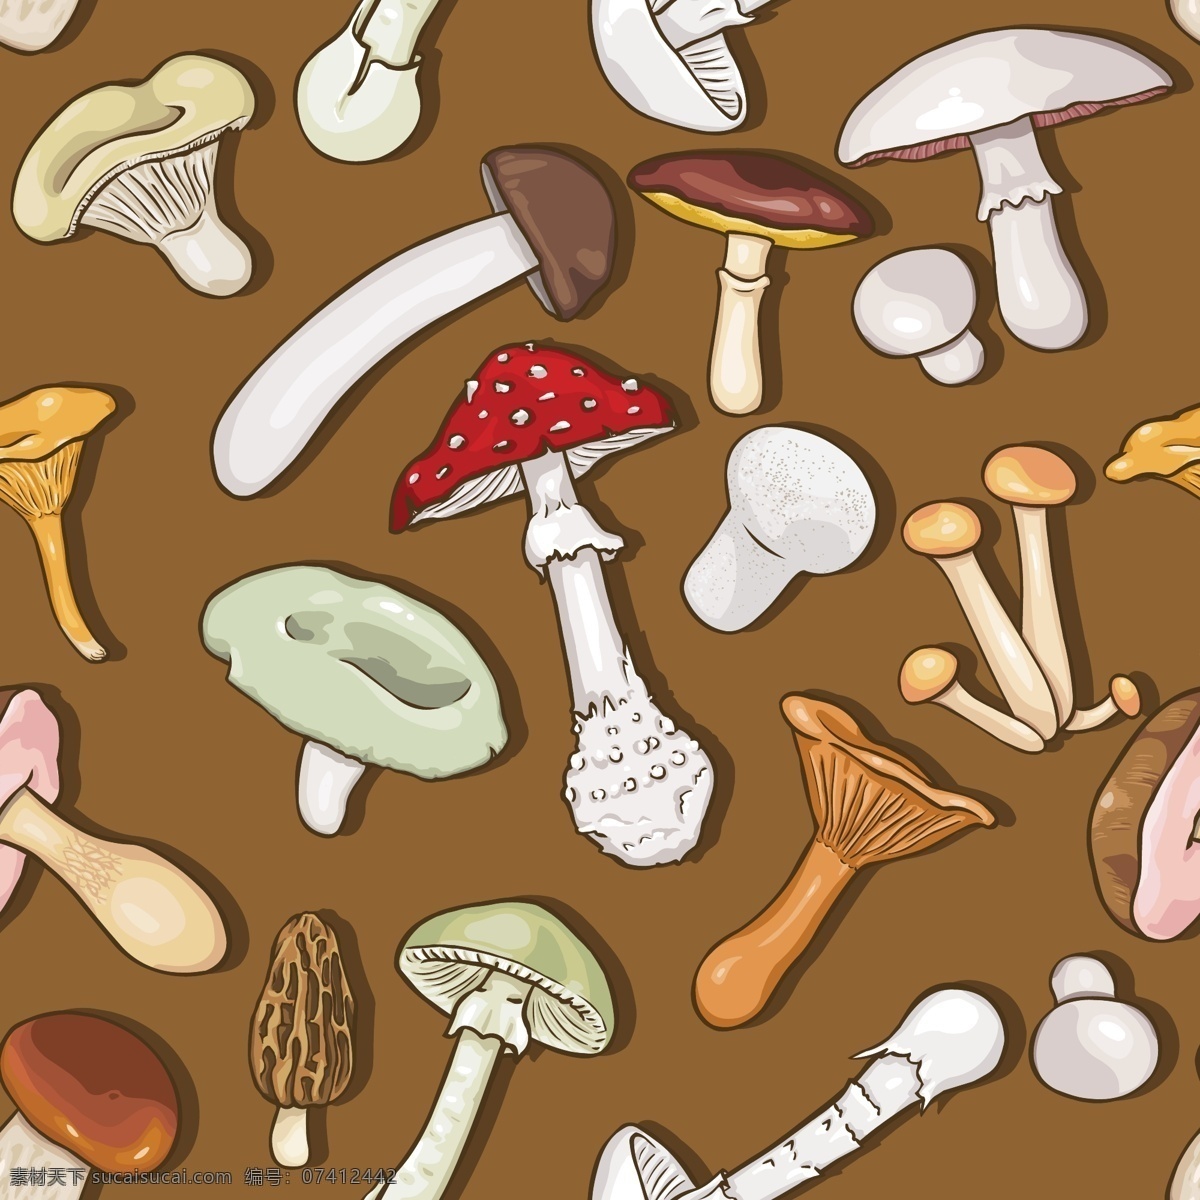 卡通 蘑菇 大全 矢量 模板下载 金针菇 香菇 美食 食物 蘑菇设计 矢量蘑菇 卡通蘑菇 手绘 餐饮美食 生活百科 矢量素材 白色